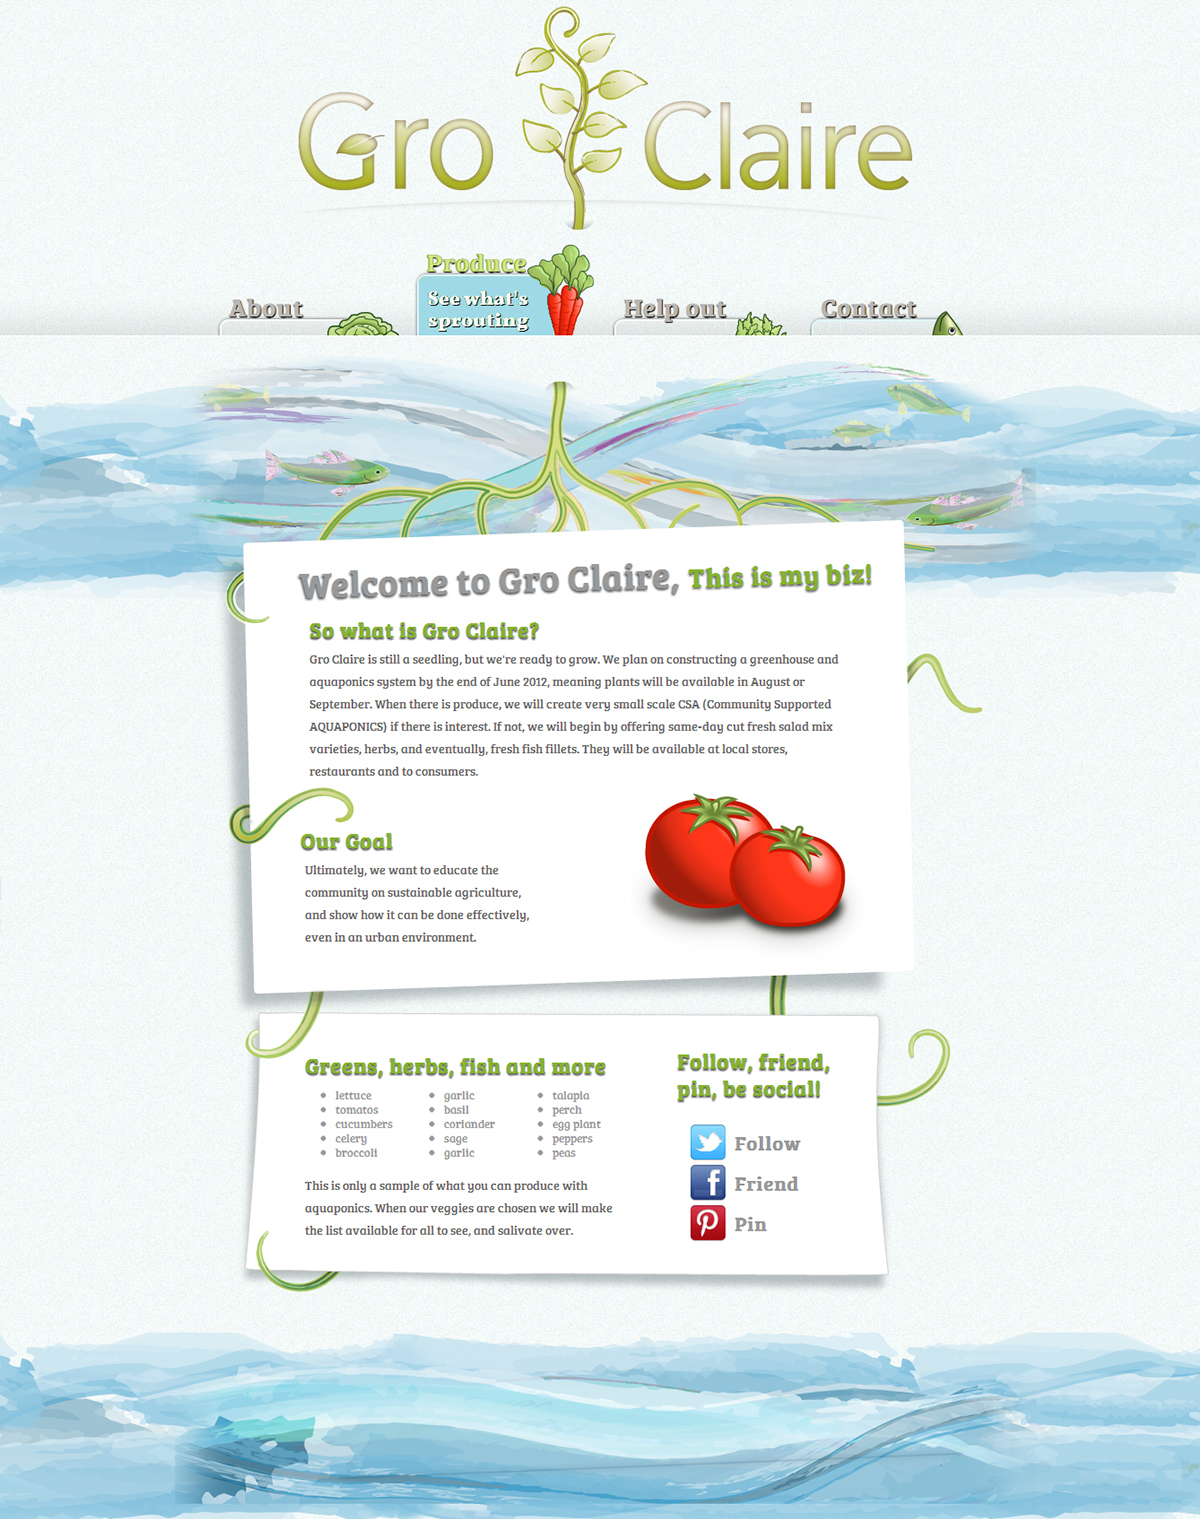 GroClaire  Gro Claire  aquaponics aeroponics  eau claire Wisconsin  vegetables produce